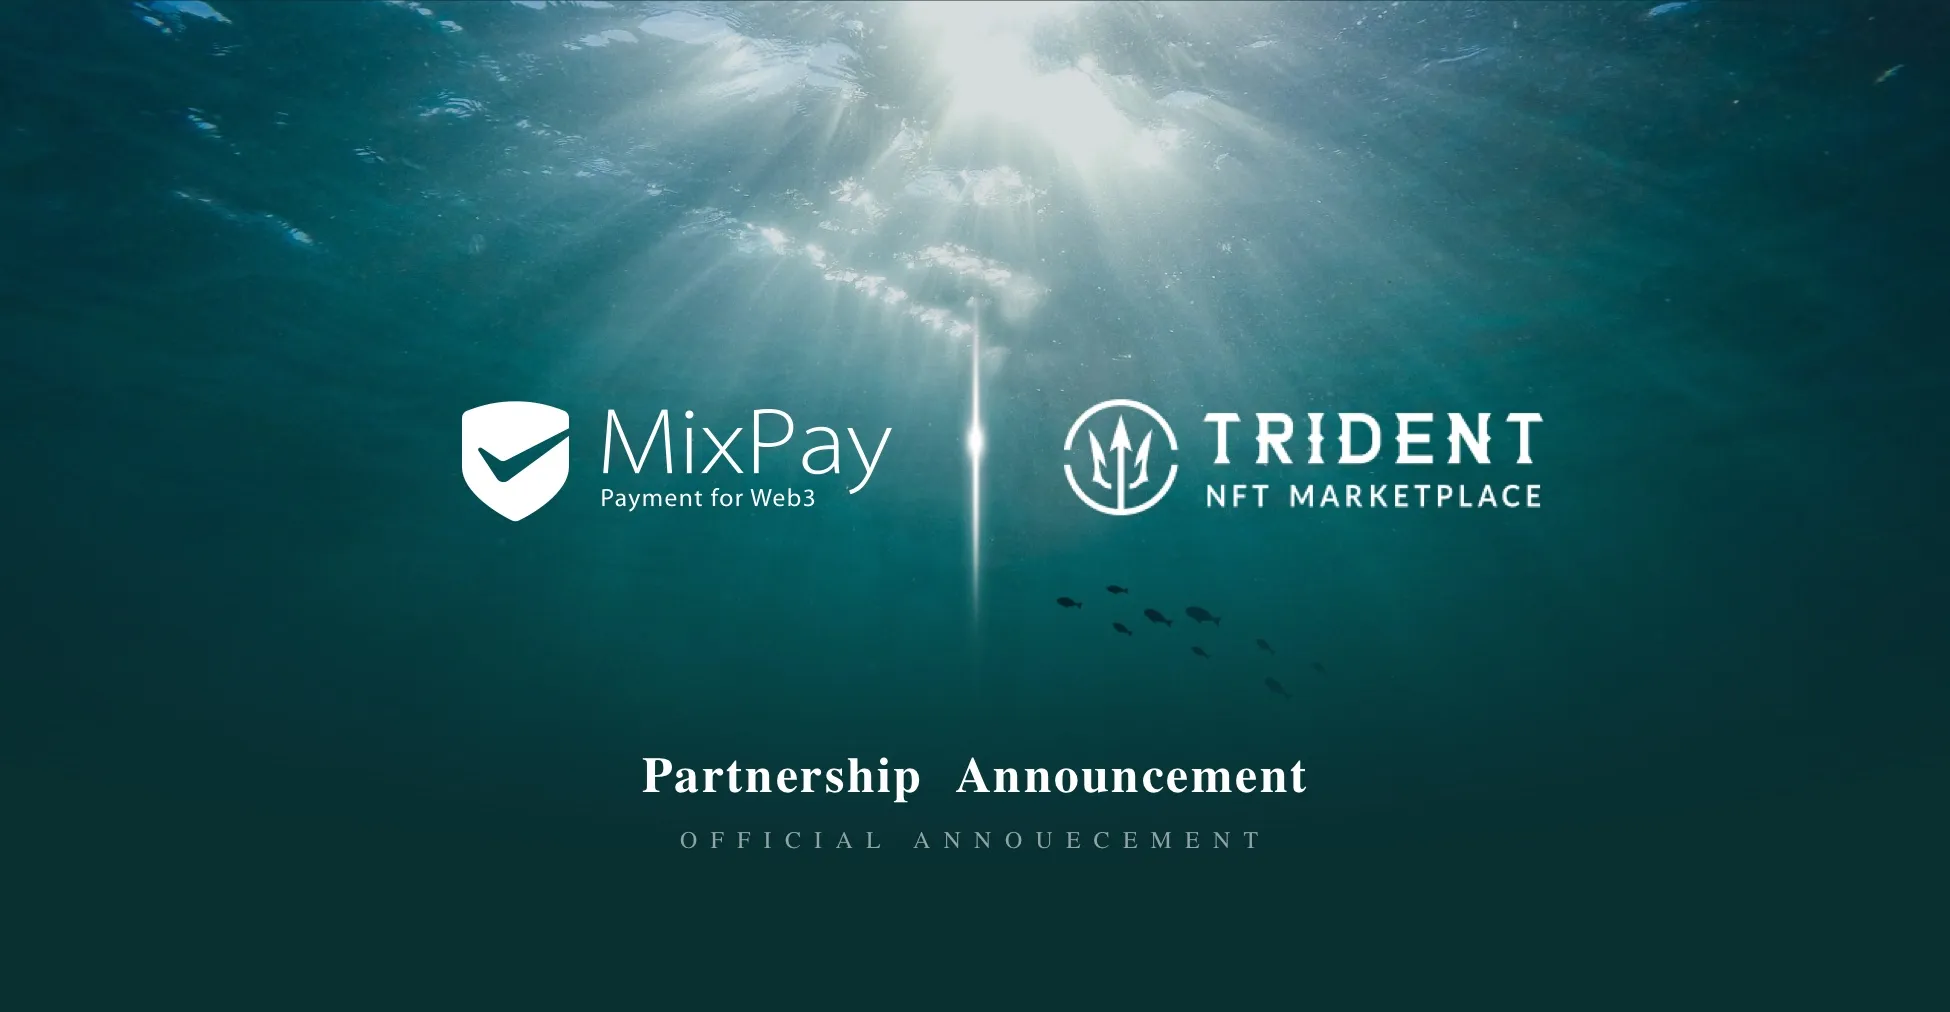 MixPay danner en strategisk alliance med Trident